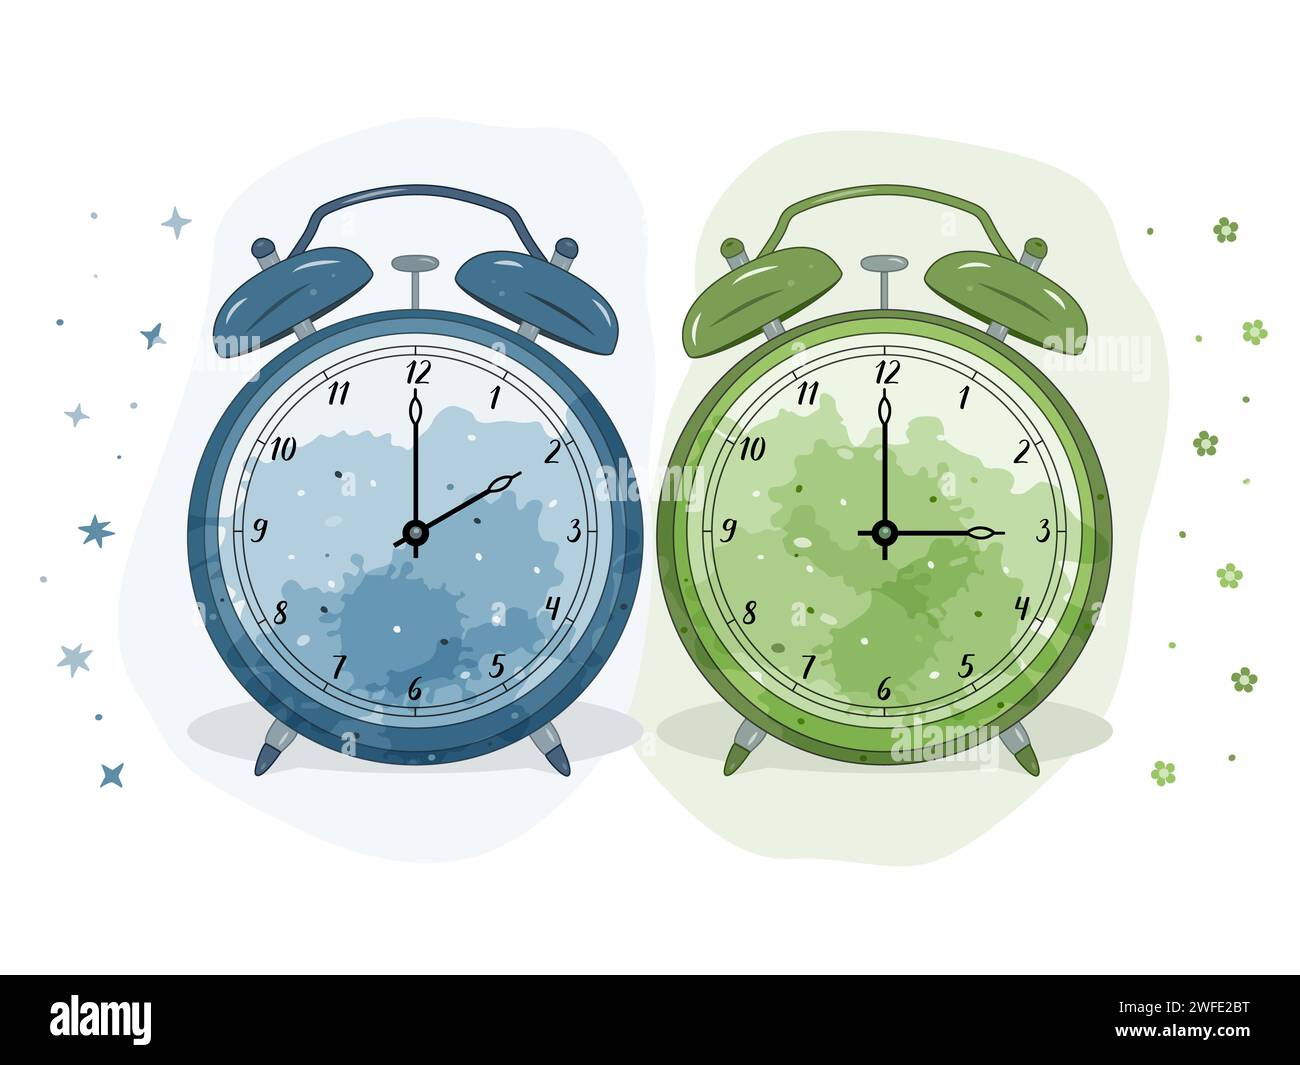 Ilustración de dos relojes de alarma. El azul simboliza el invierno, el verde la primavera. Símbolo de ajuste de tiempo. Moviendo las manos hacia adelante de 2 a 3. Ilustración del Vector